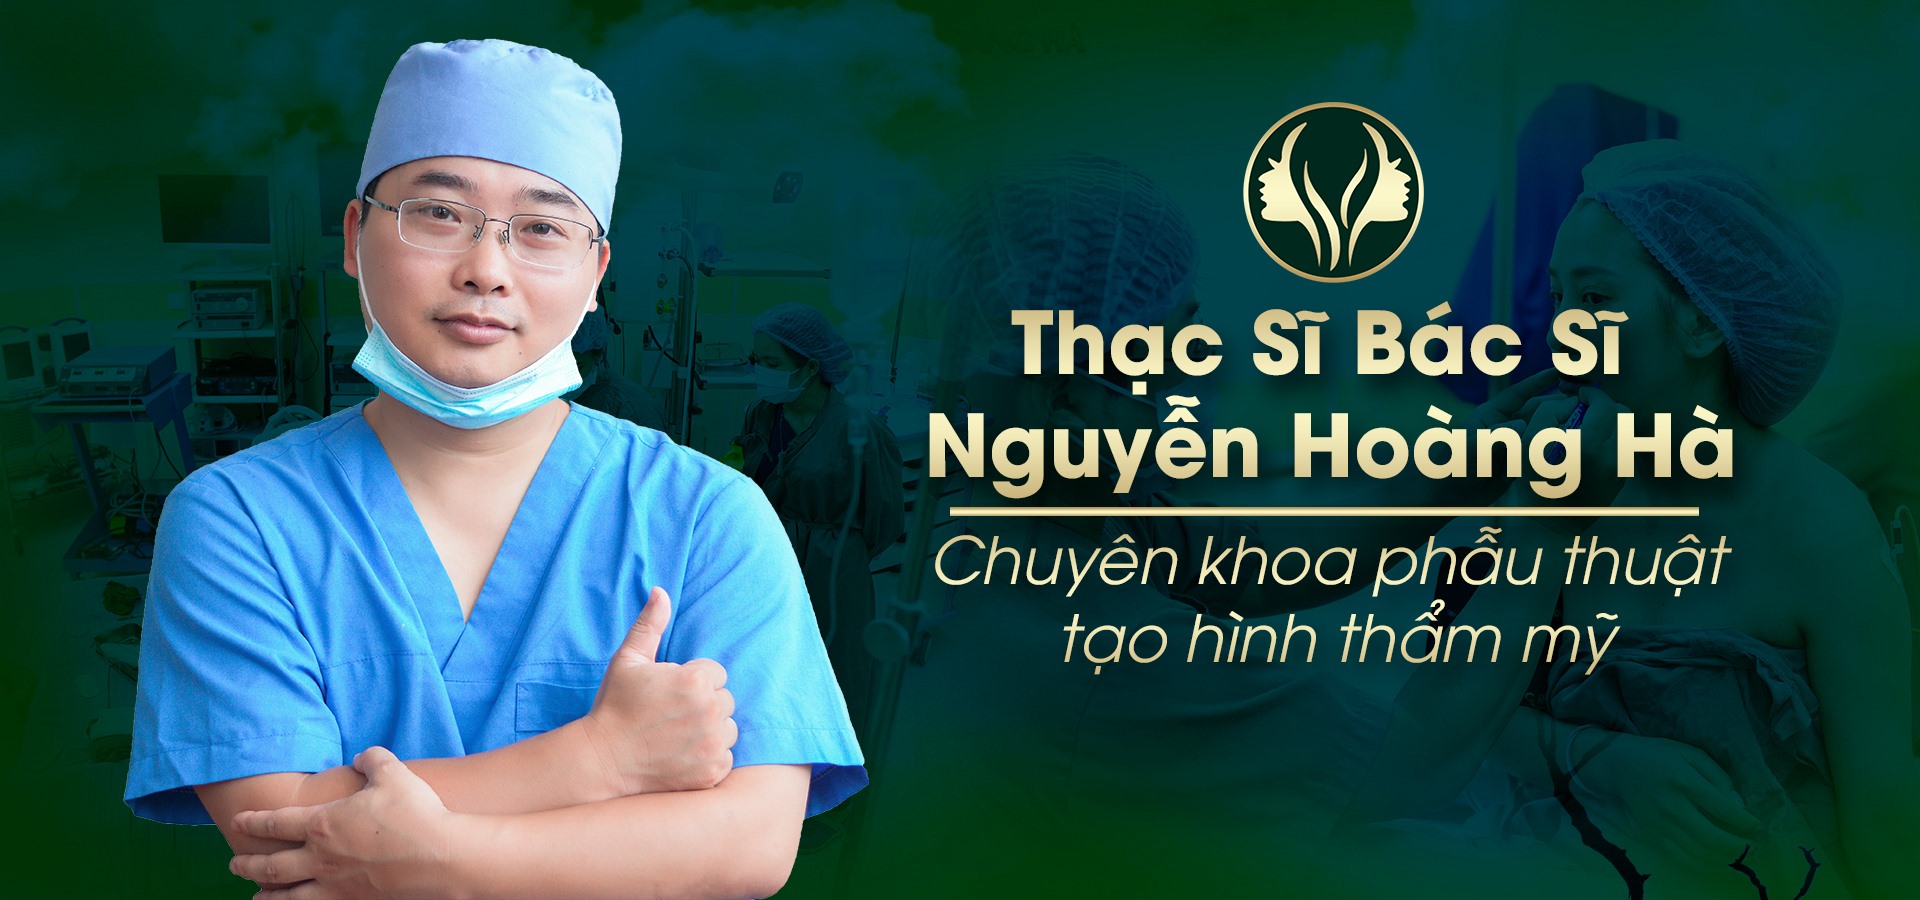 ThS Bác sĩ Nguyễn Hoàng Hà trực tiếp thực hiện tạo hình cô bé cho mọi khách hàng